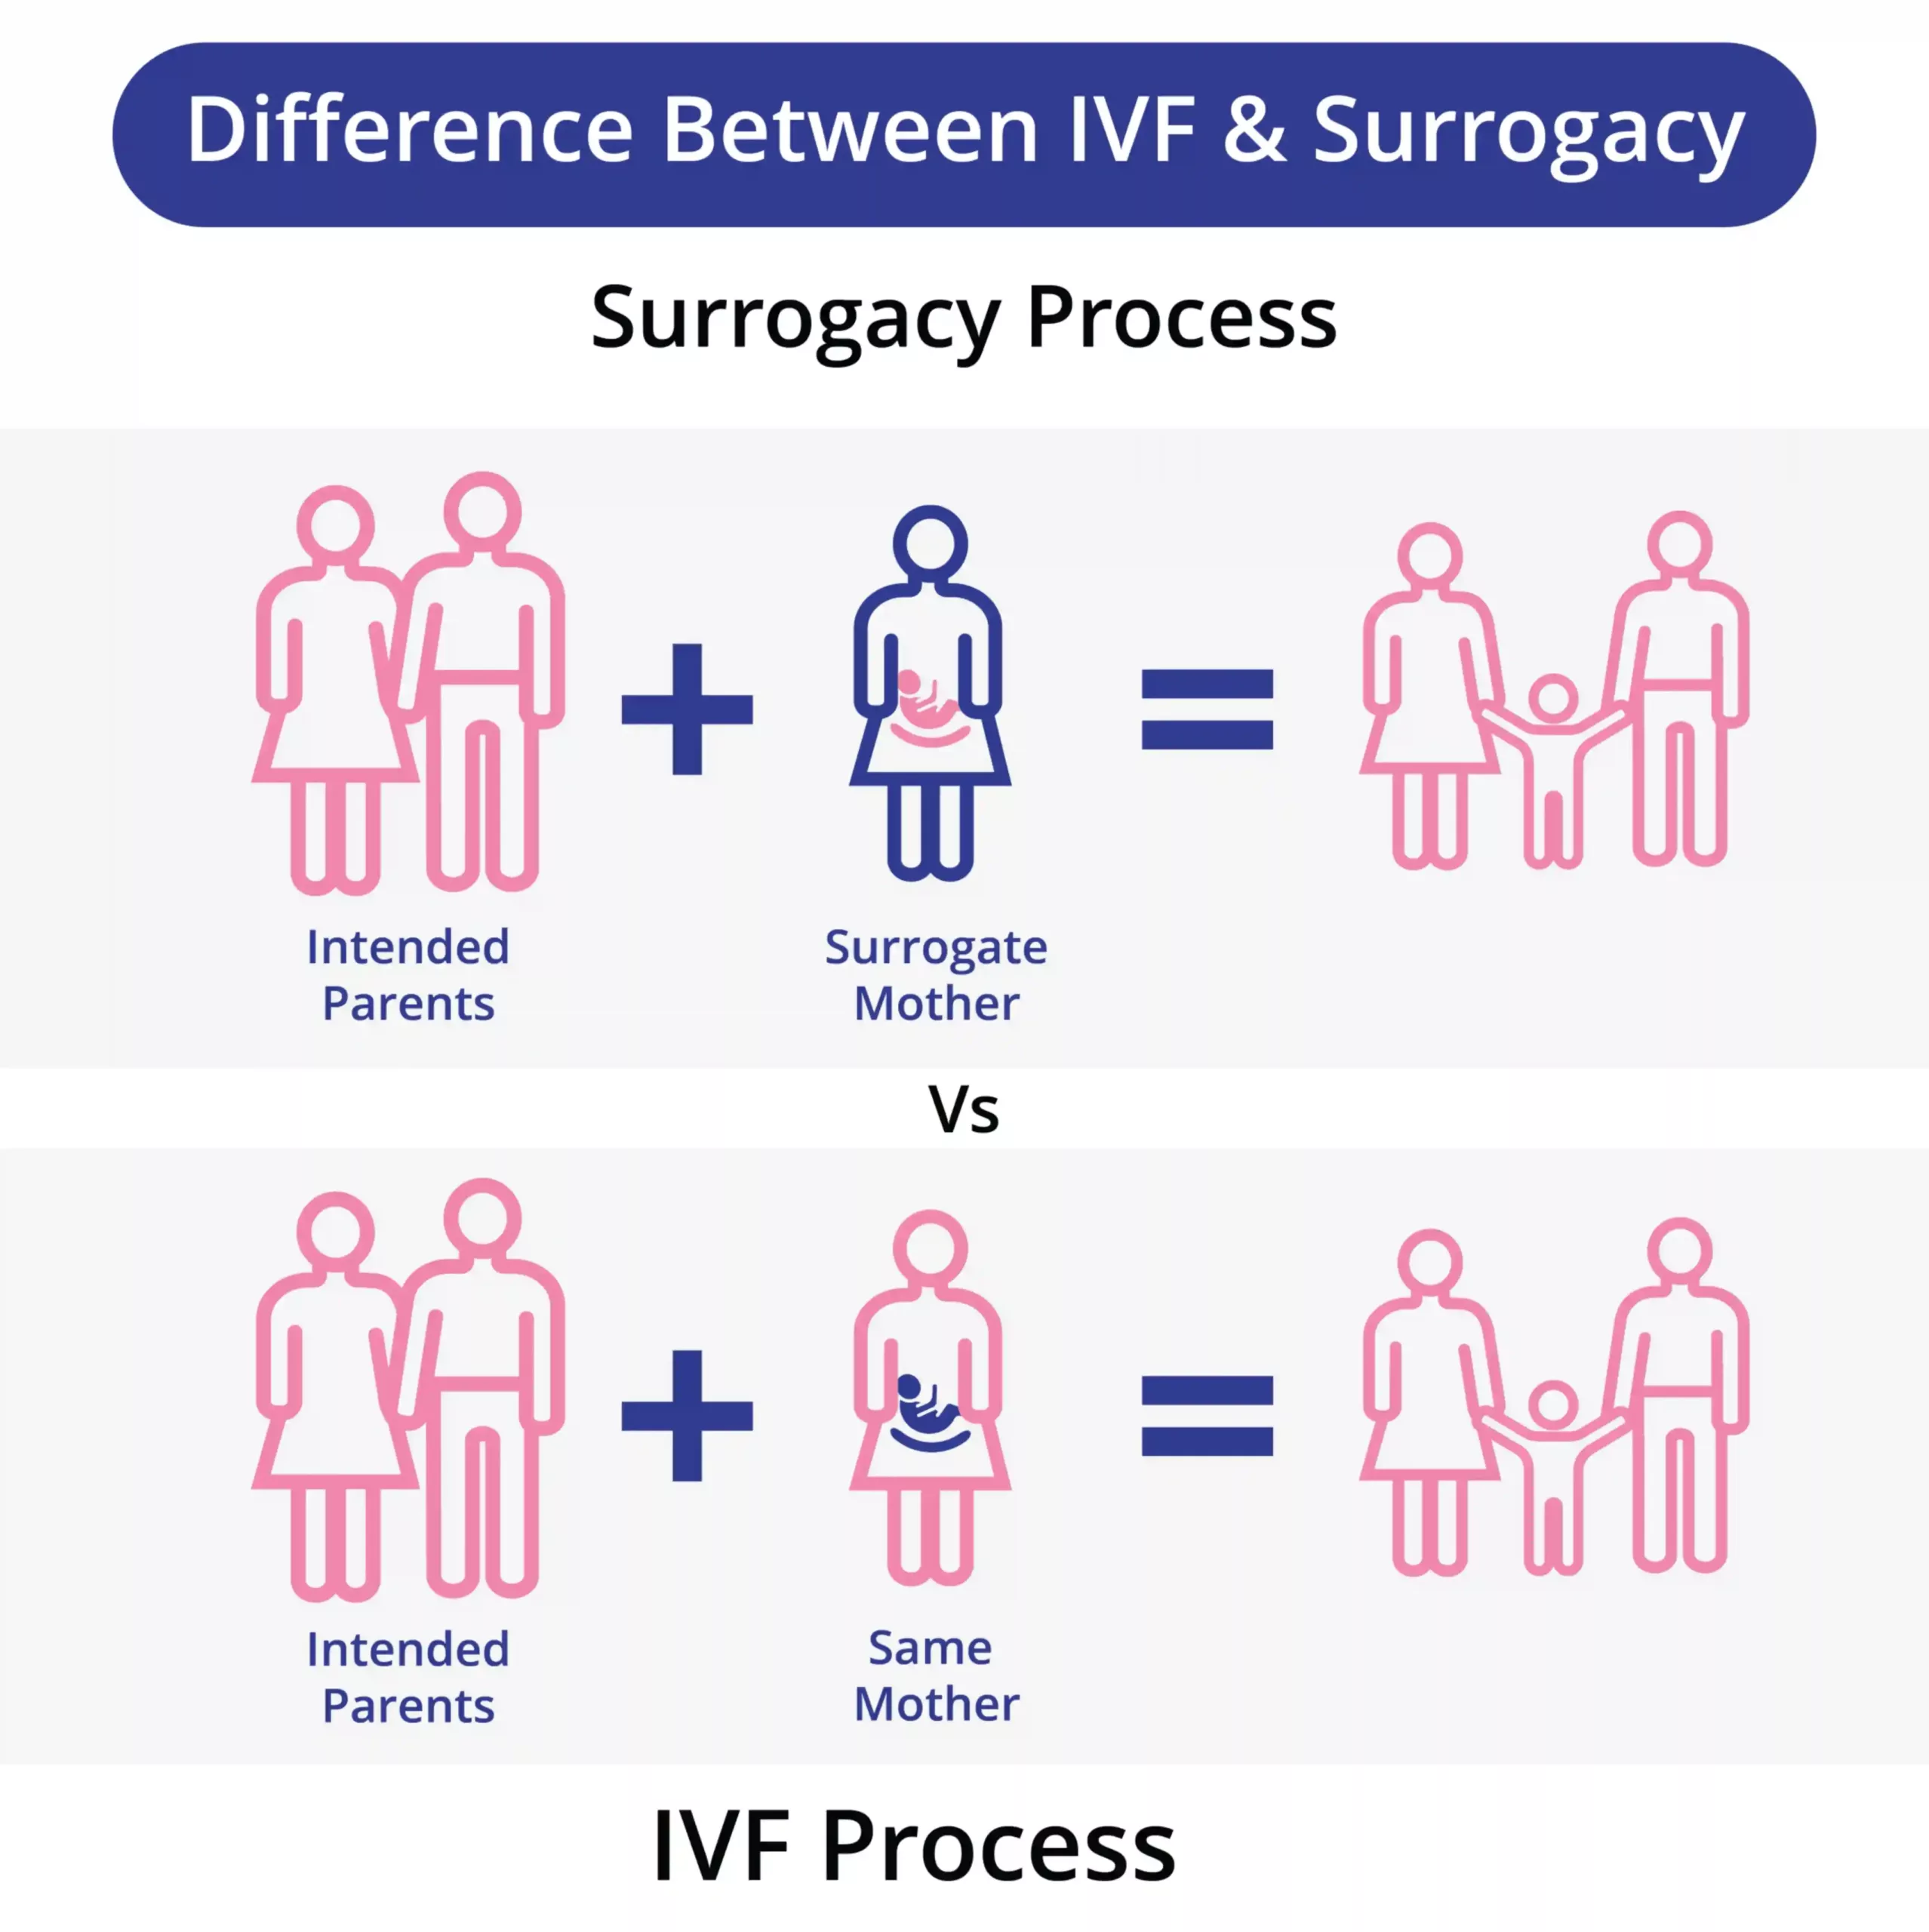 IVF Vs సరోగసీ